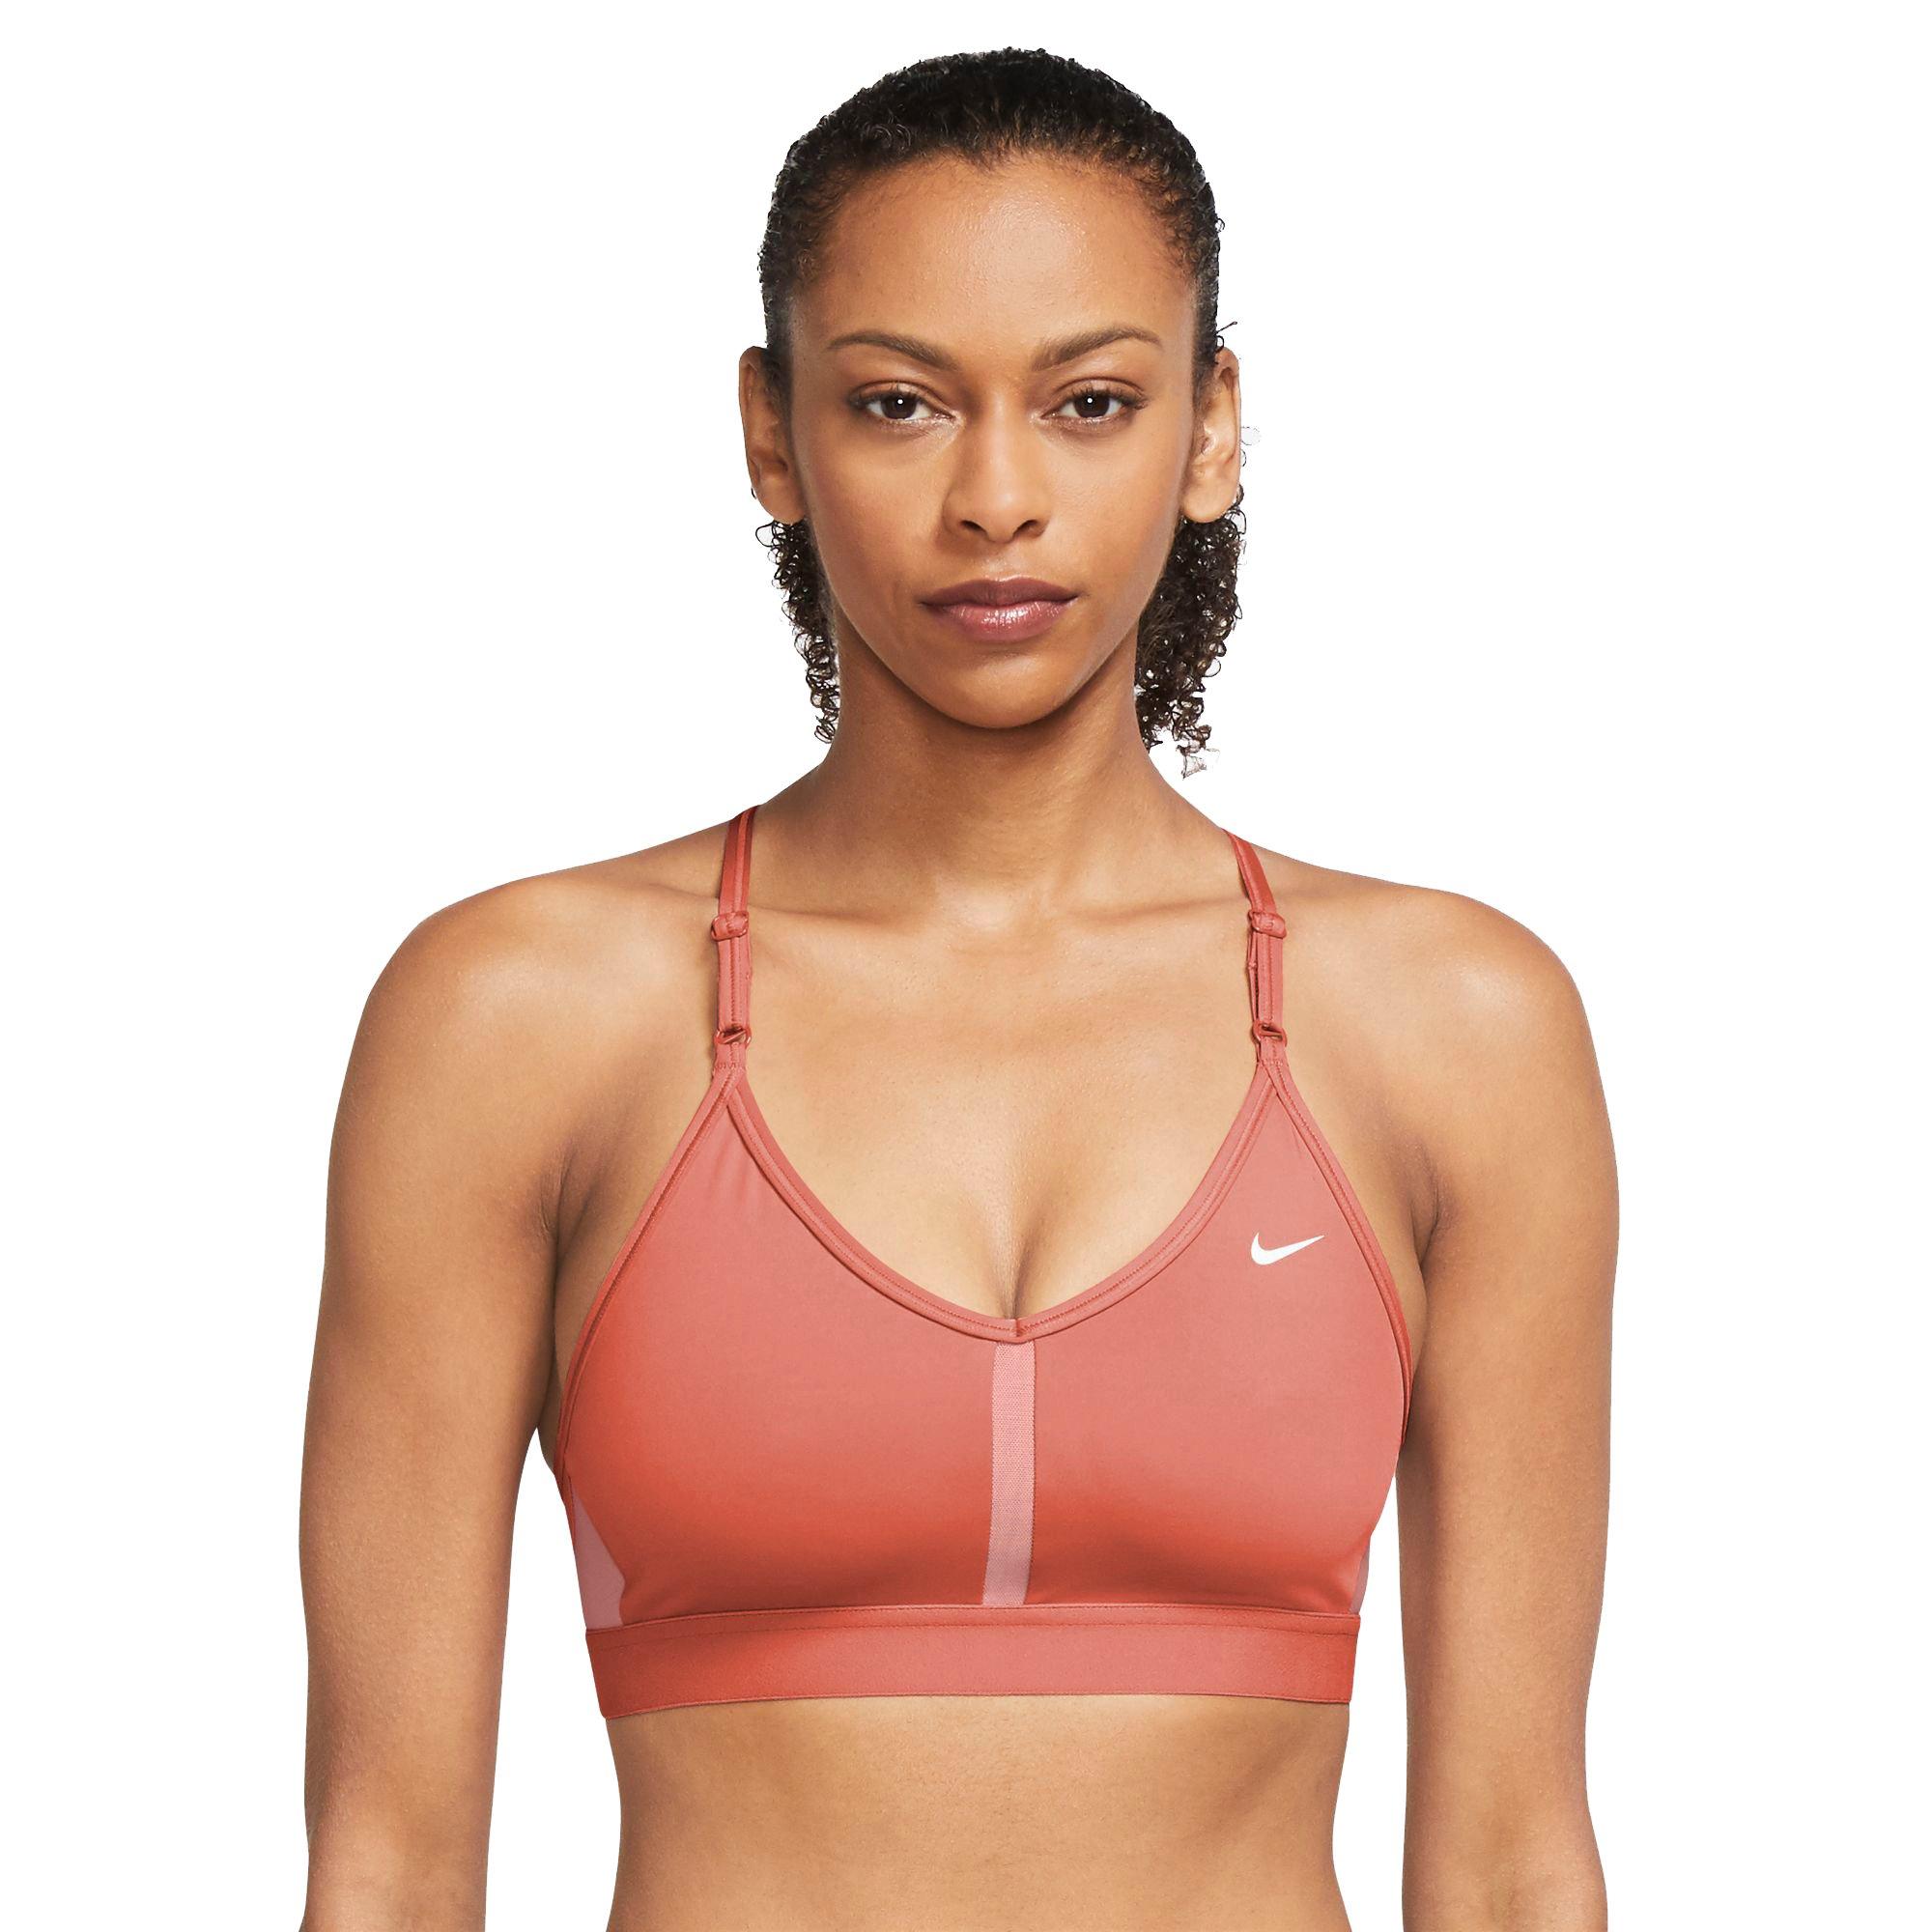 Nike Orange Sports Bra - Womens XS